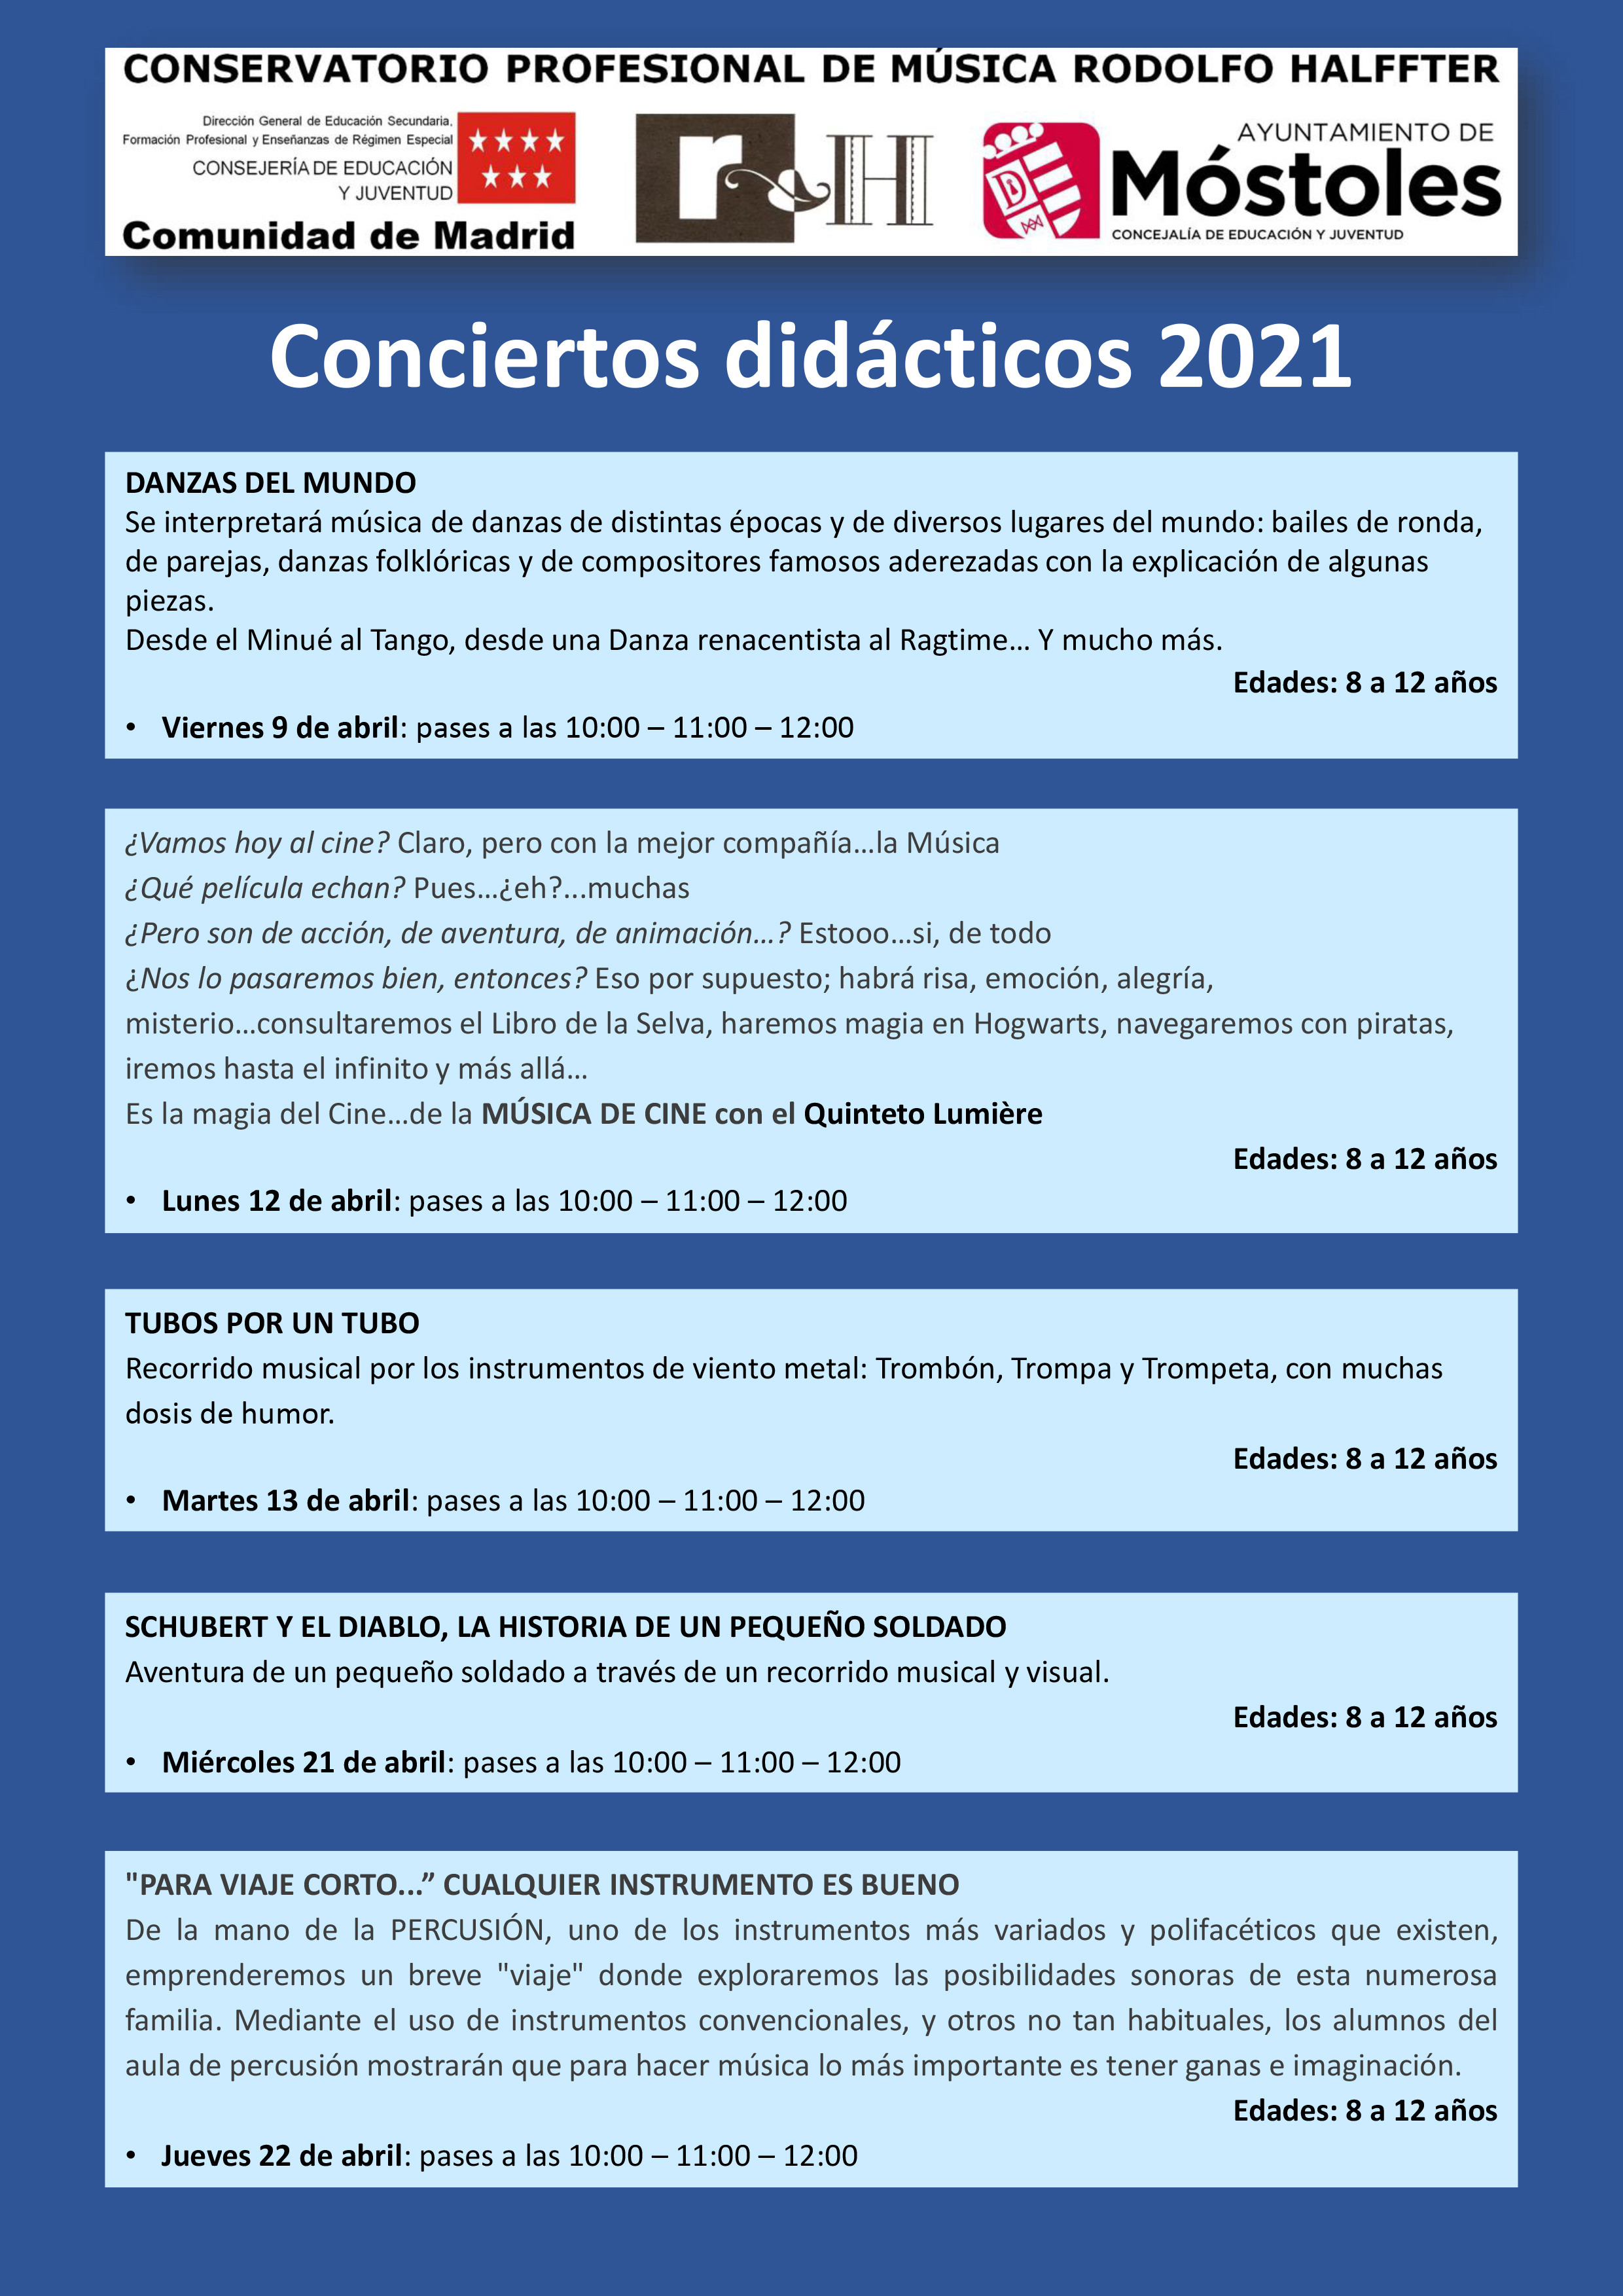 Conciertos didácticos en el Conservatorio 2021P